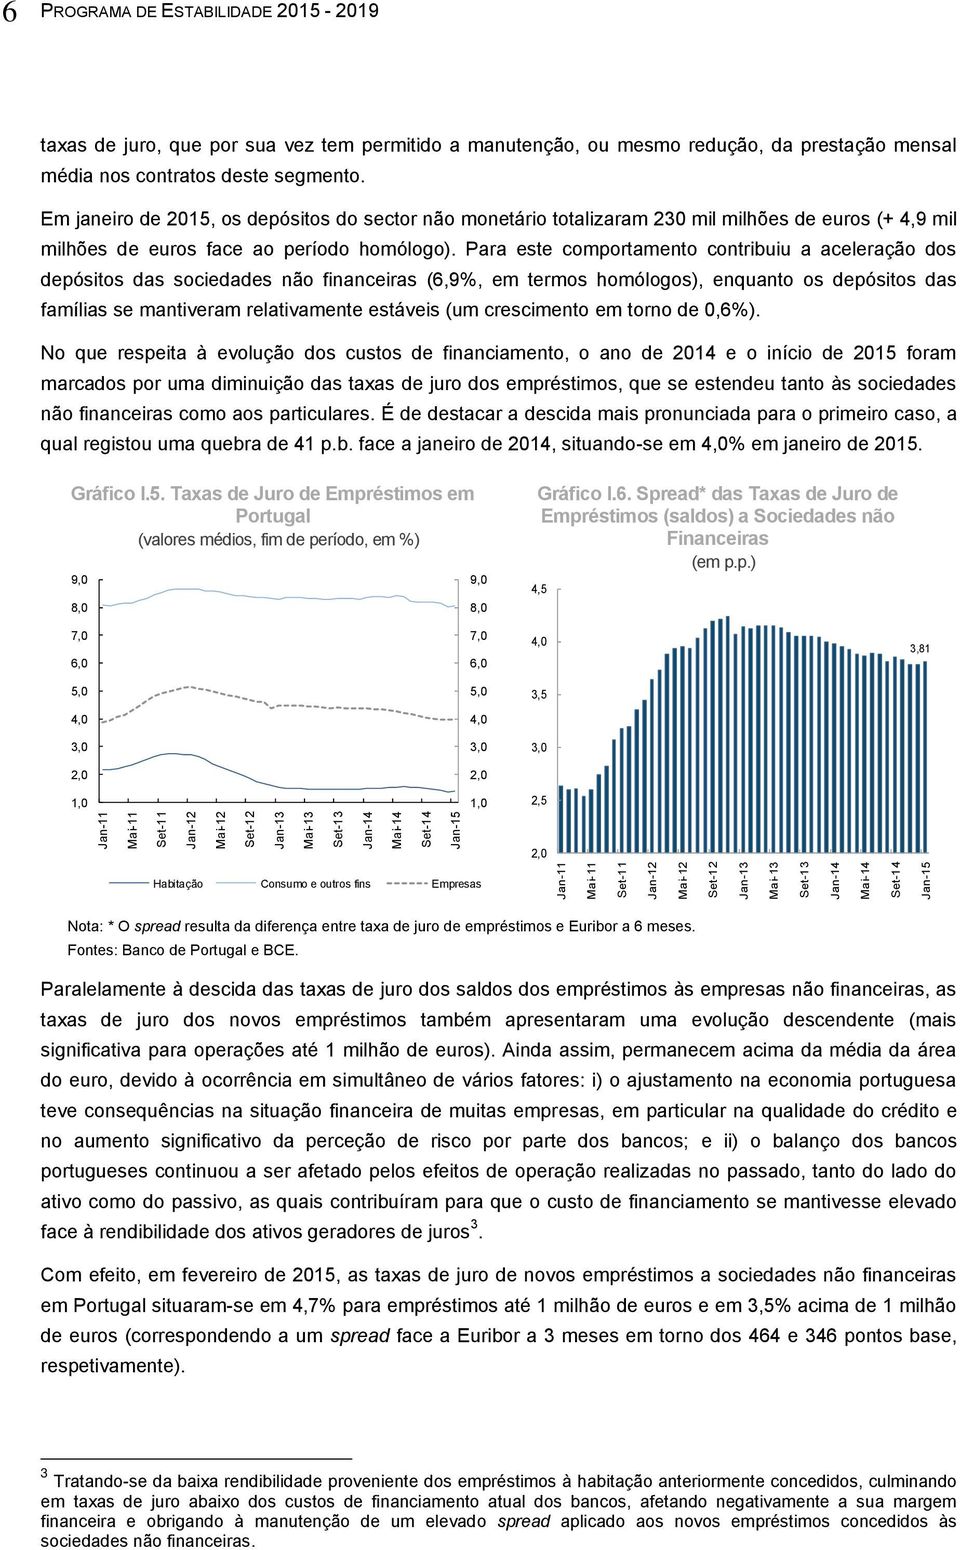 Em janeiro de 2015, os depósitos do sector não monetário totalizaram 230 mil milhões de euros (+ 4,9 mil milhões de euros face ao período homólogo).